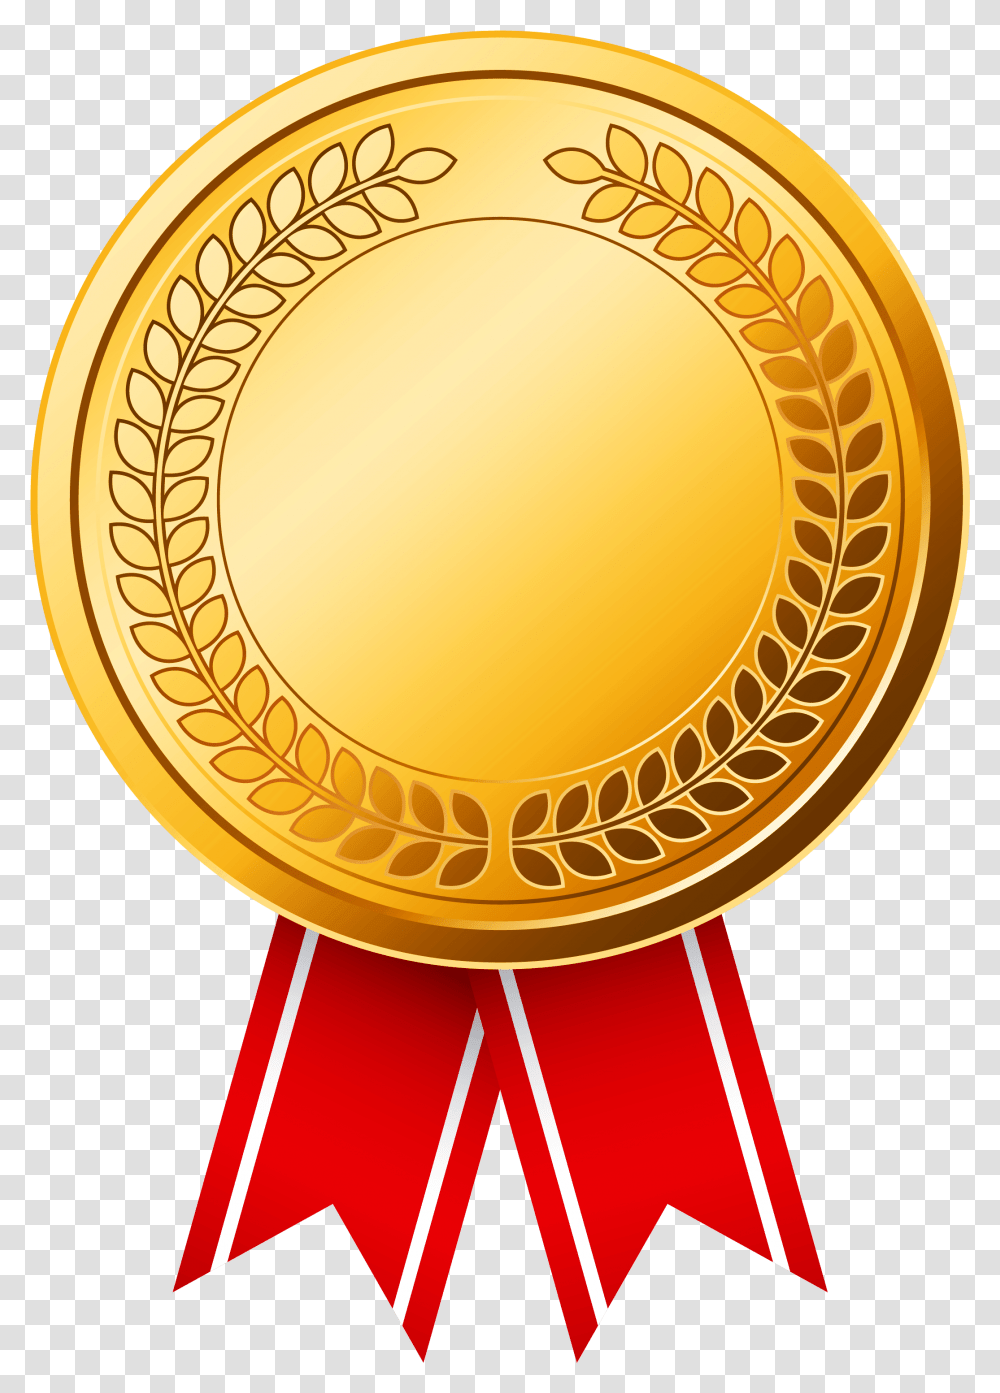 Medal Gold Olympic Medals Gold Medal, Logo, Symbol, Trademark, Trophy Transparent Png